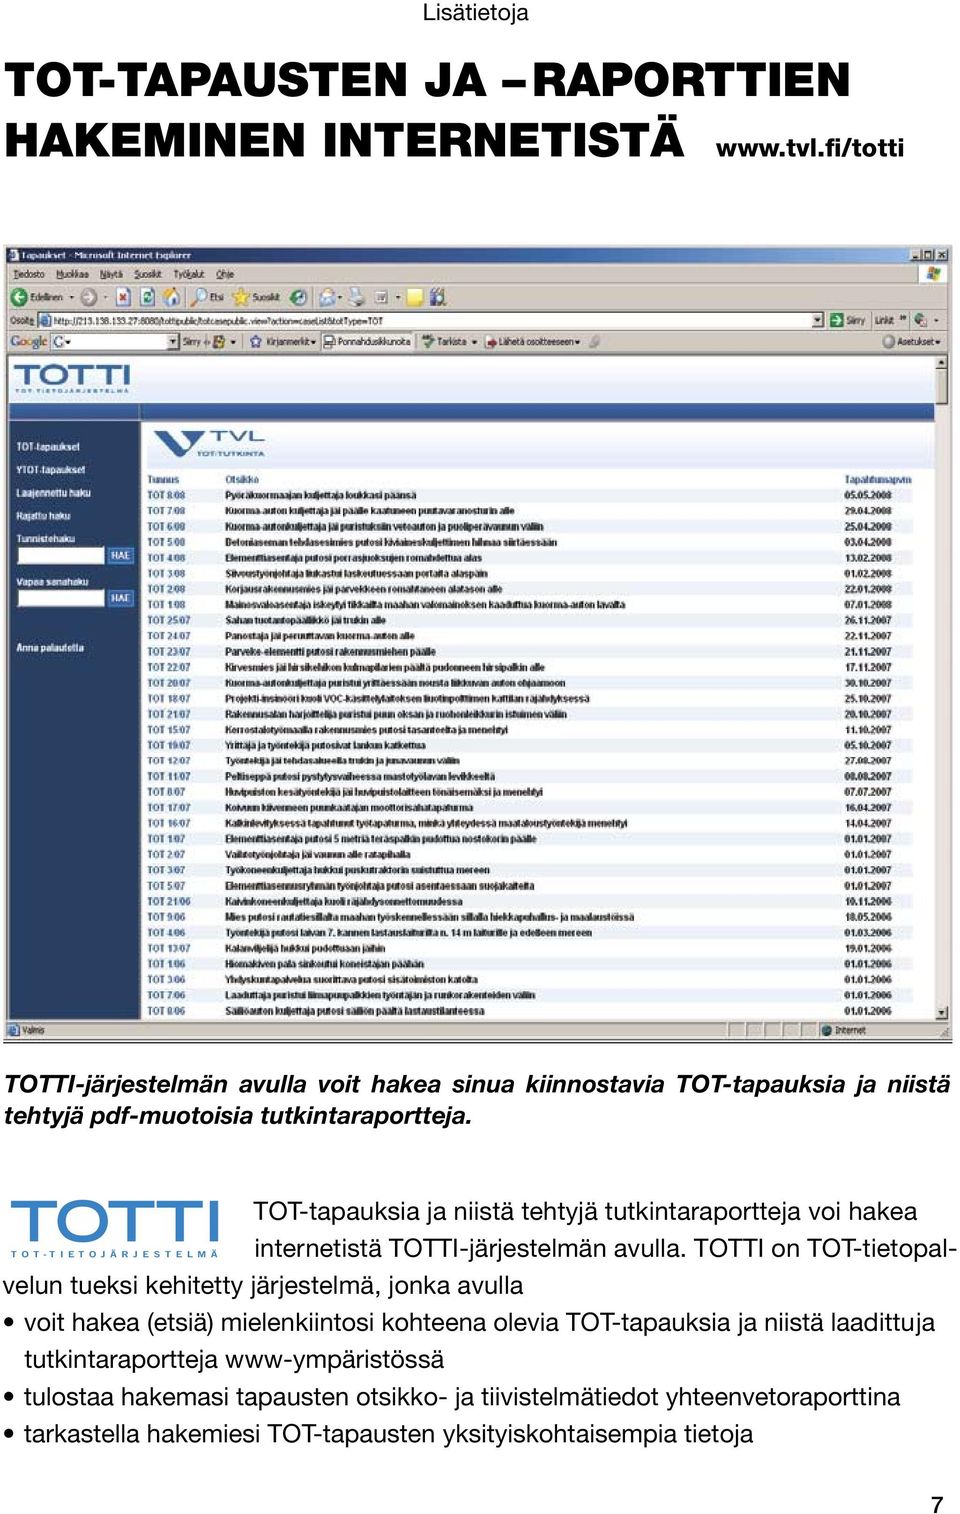 TOTTI T O T - T I E T O J Ä R J E S T E L M Ä TOT-tapauksia ja niistä tehtyjä tutkintaraportteja voi hakea internetistä TOTTI-järjestelmän avulla.